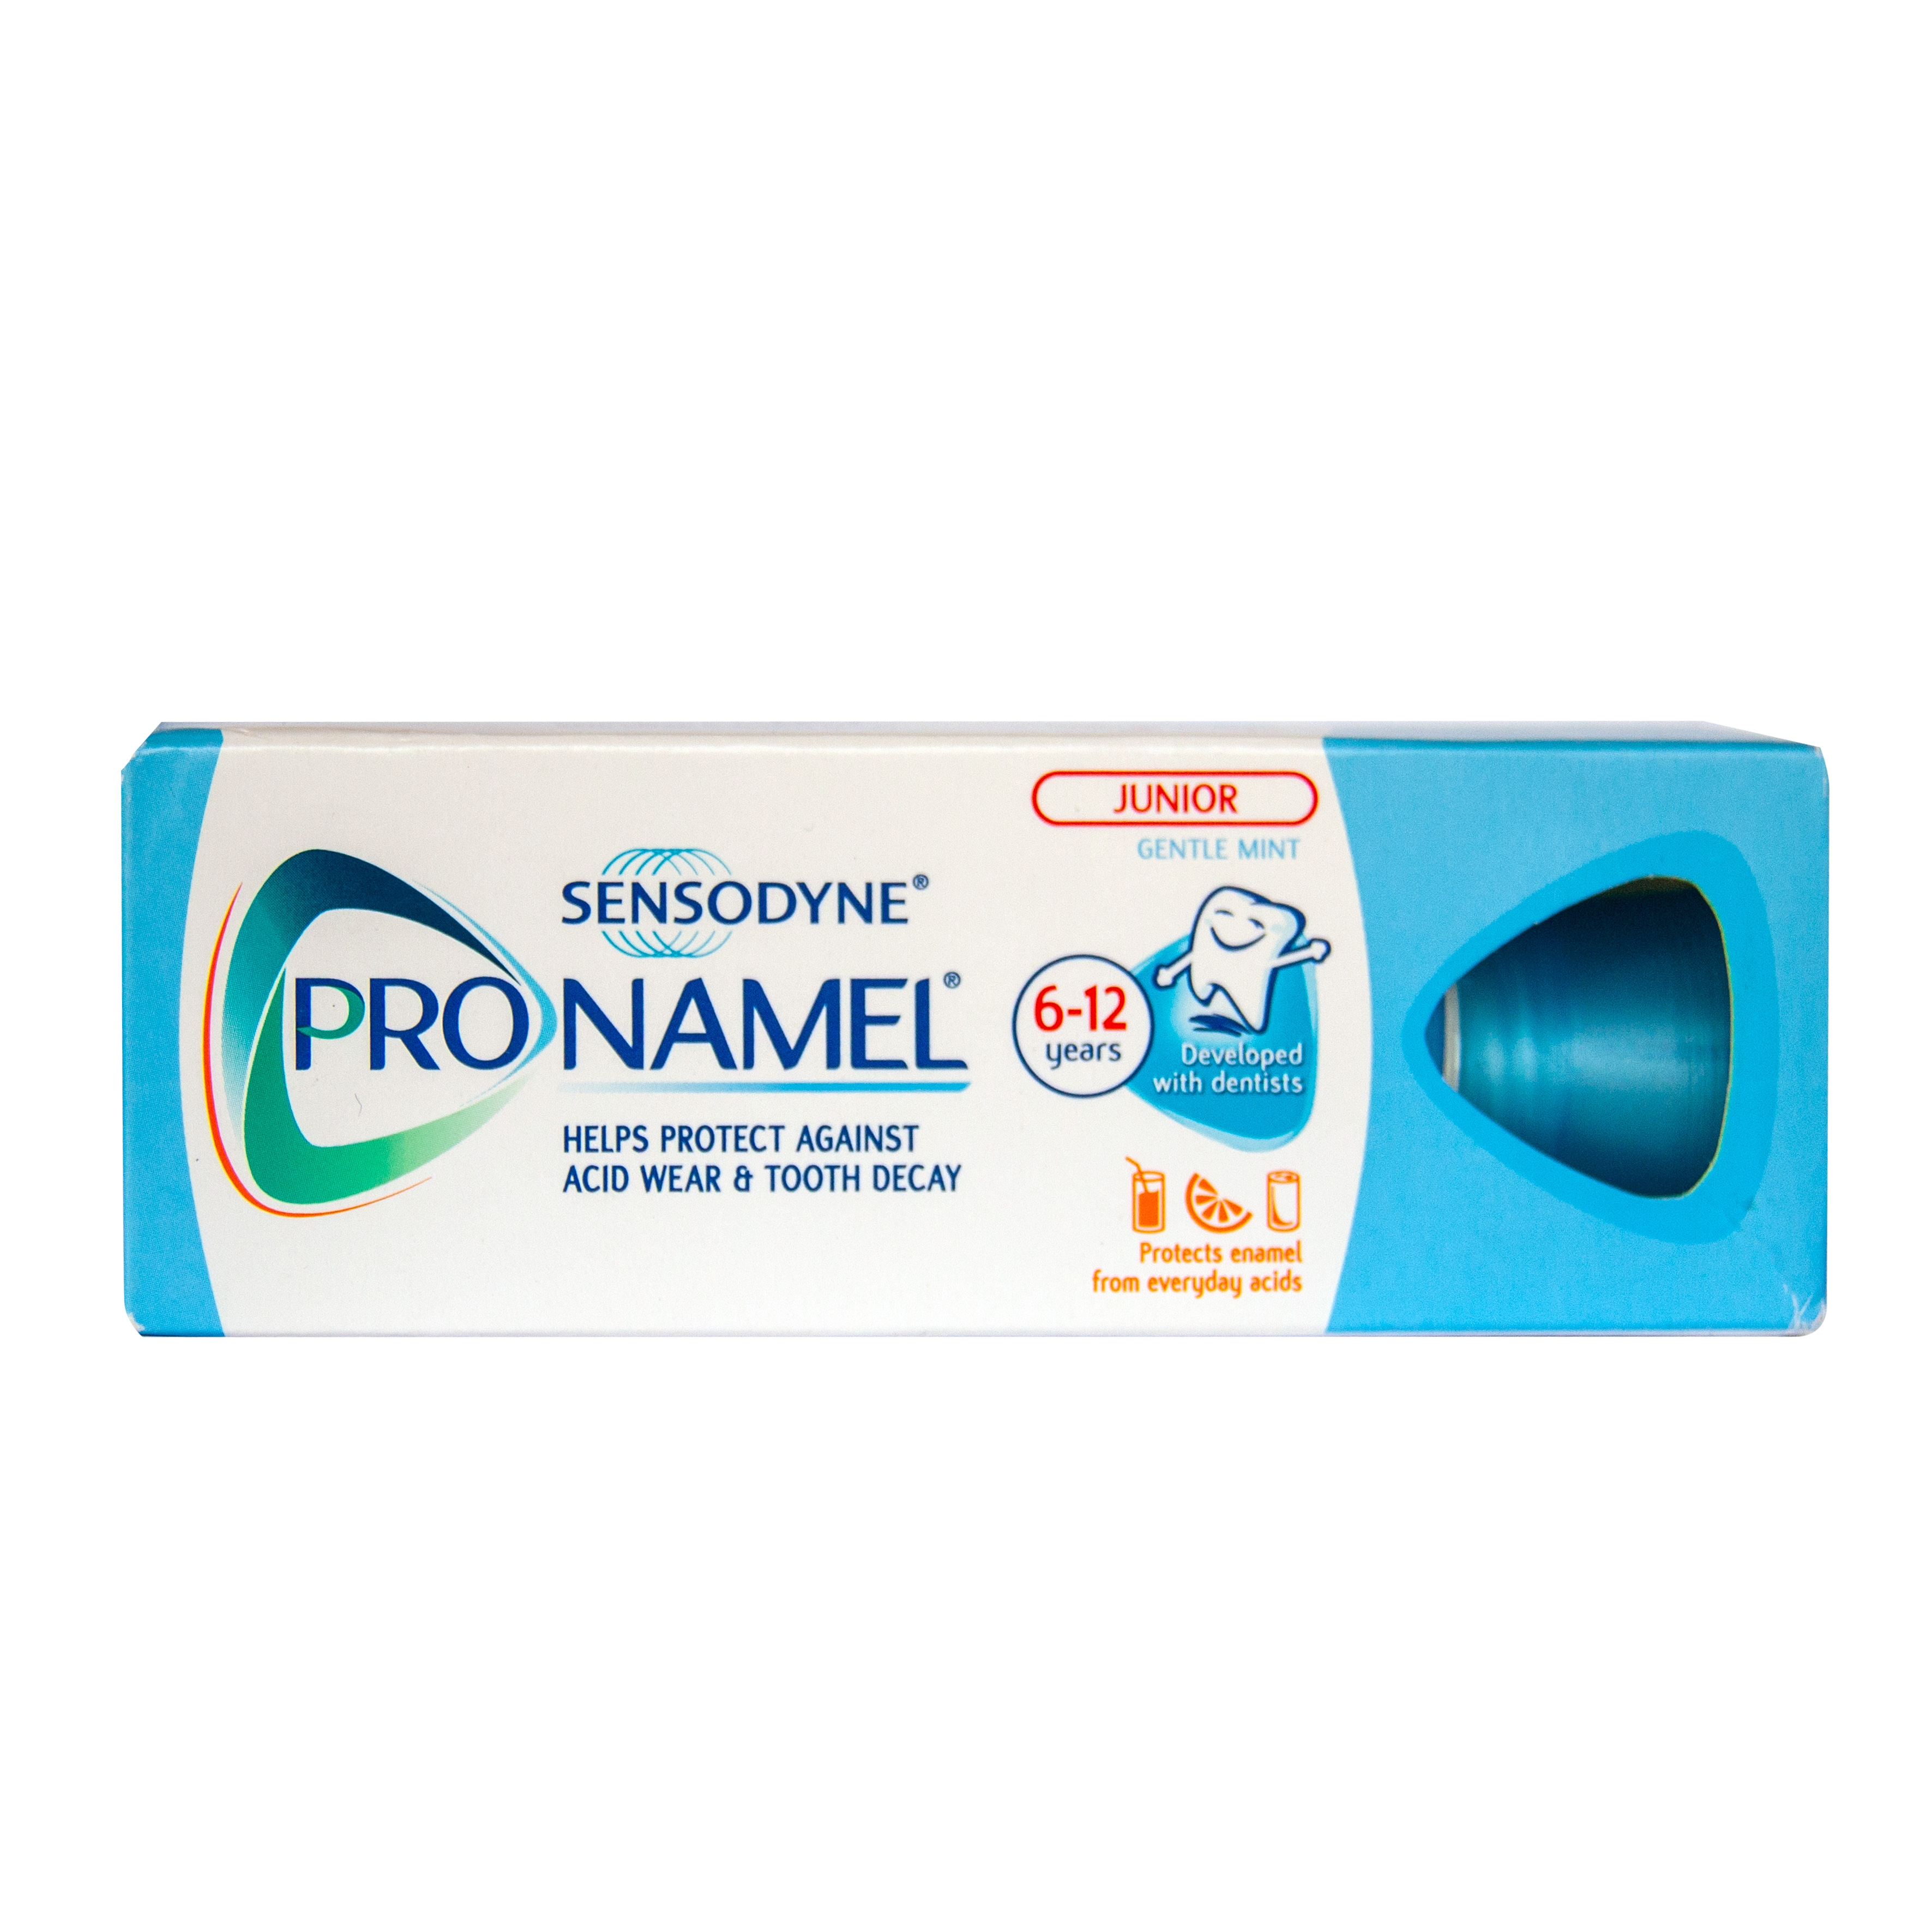 Paste de dinti pentru copii - Sensodyne pasta de dinti Pronamel junior x 50ml, medik-on.ro